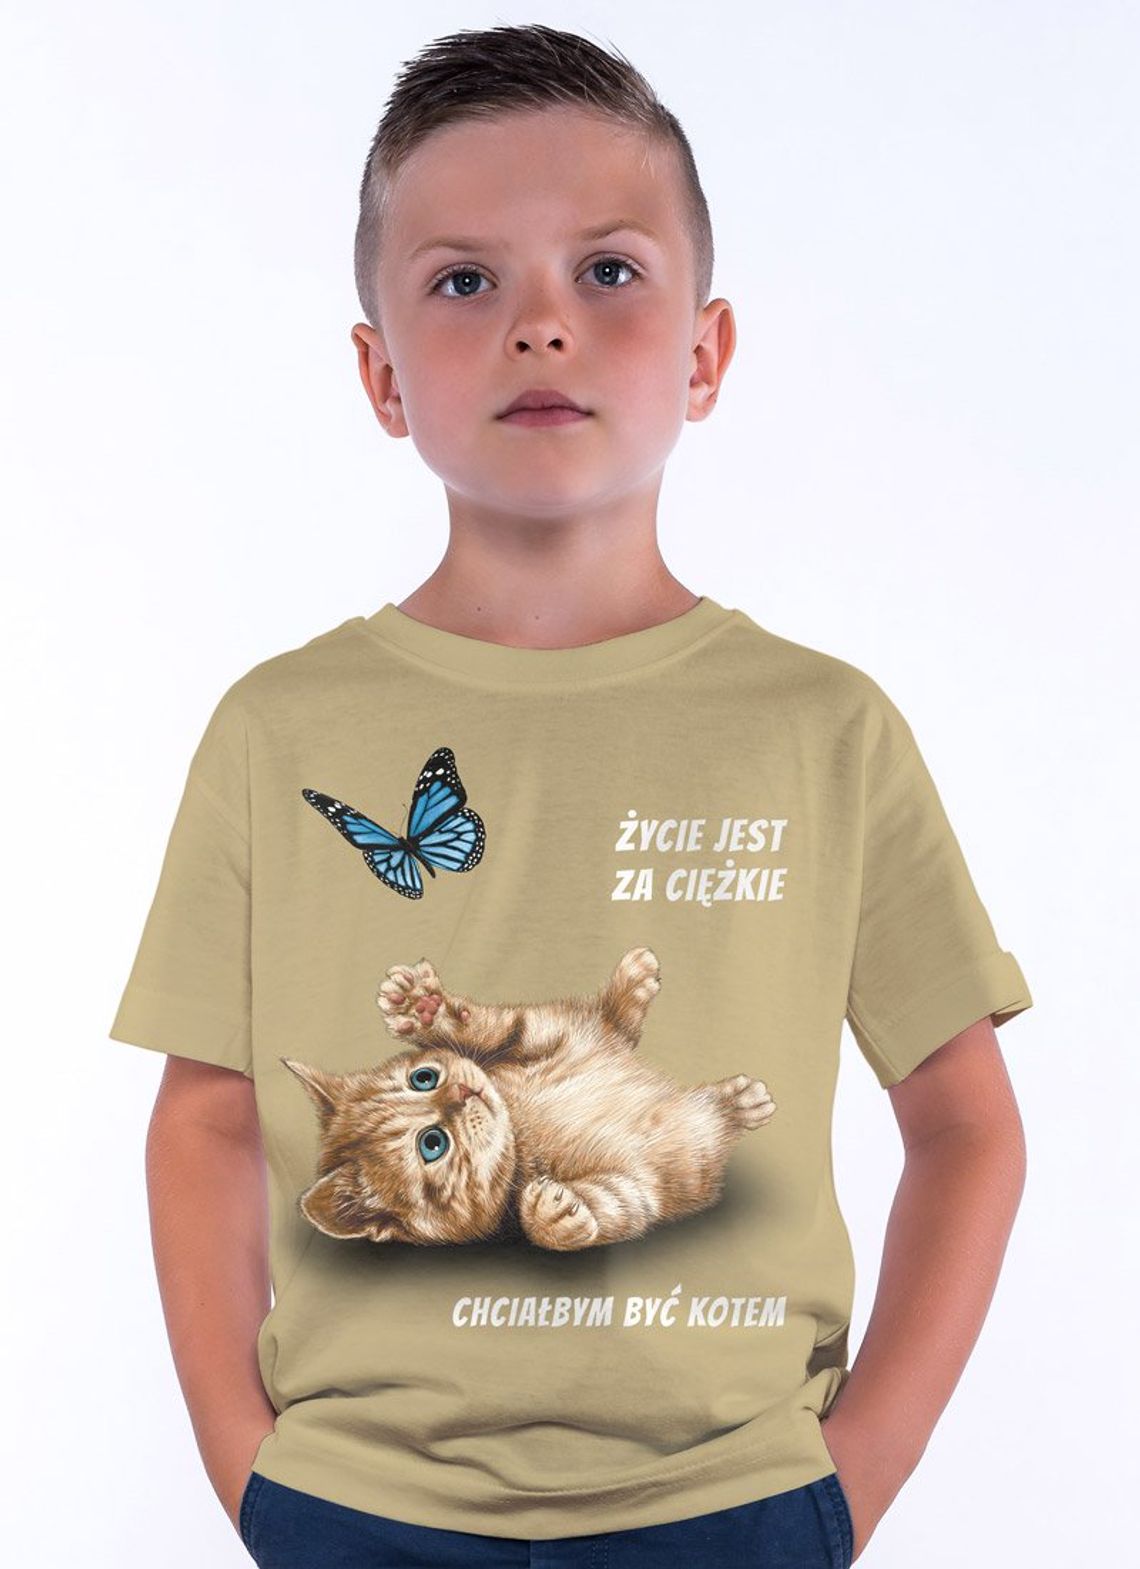 Jakie koszulki warto kupić na prezent dla dziecka?